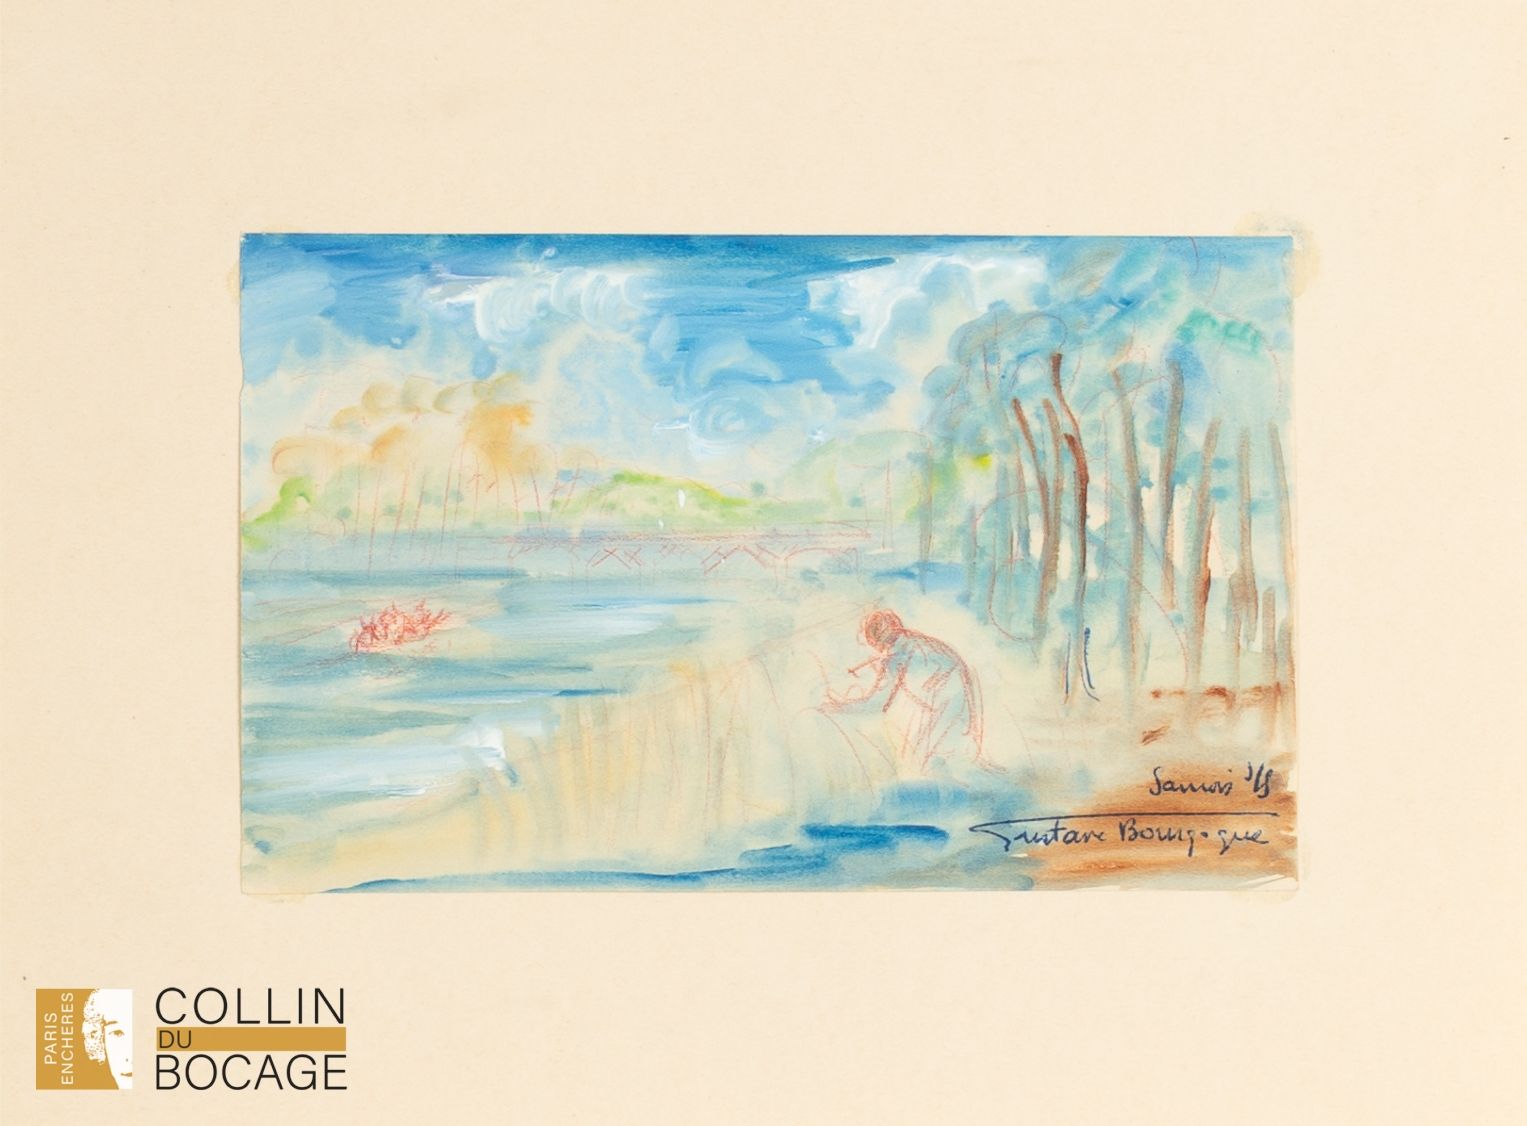 Null 古斯塔夫-布戈涅（1888-1968 年）
桑诺瓦风景 
纸面水彩画
右下方有签名和位置
11 x 17.5 厘米